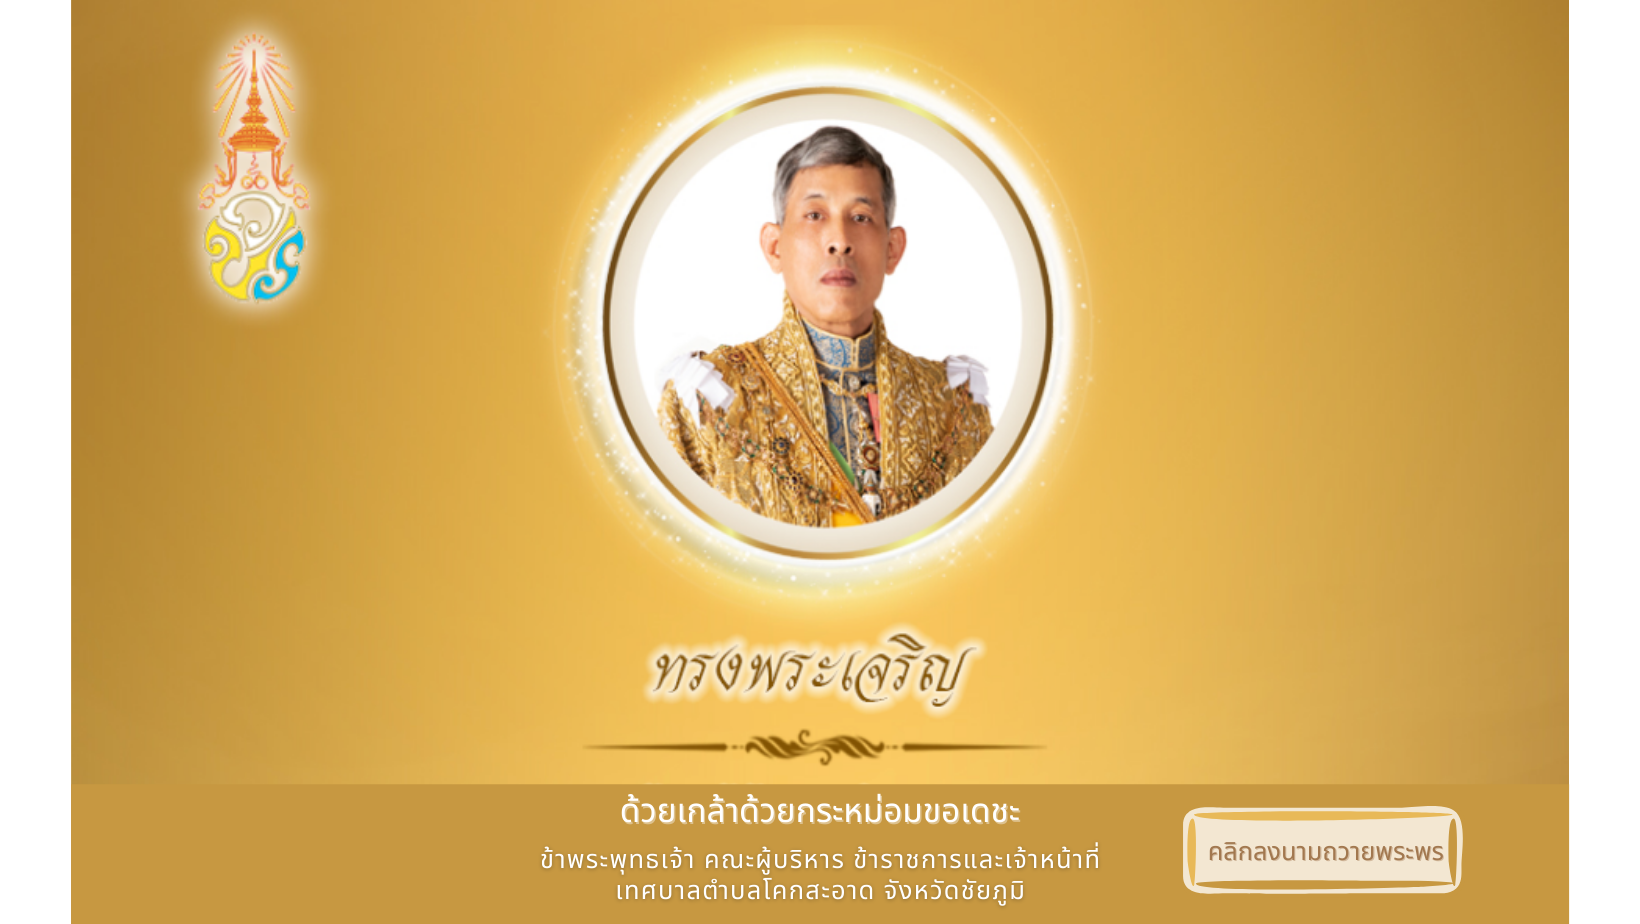 เทศบาลตำบลโคกสะอาด ขอเชิญประชาชนชาวไทย ร่วมลงนามถวายพระพร เนื่องในวันฉัตรมงคล วันที่ 4 พฤษภาคม 2565 ตลอดเดือนพฤษภาคม